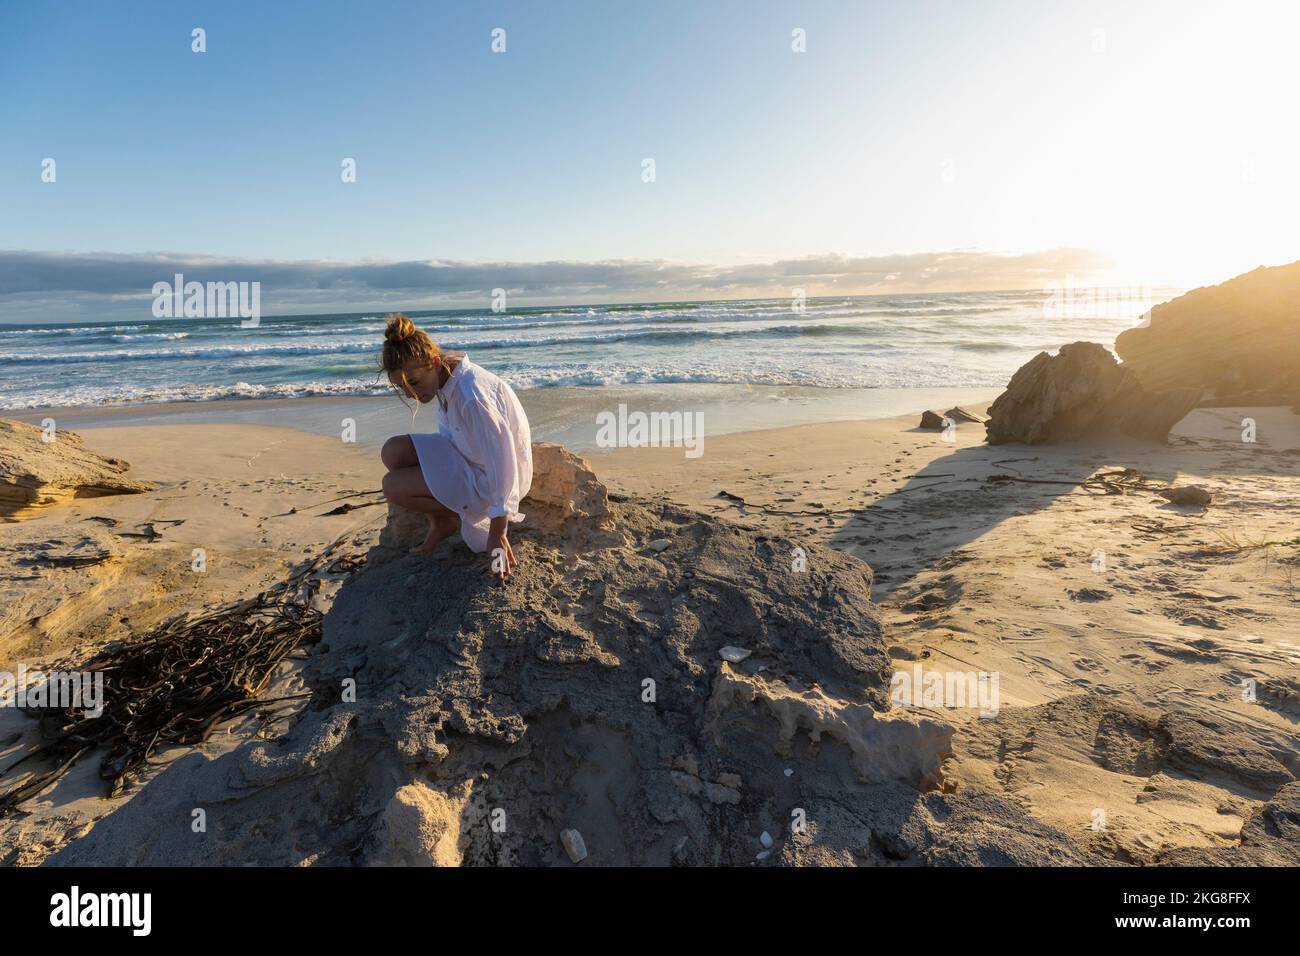 Afrique du Sud, Hermanus, adolescente (16-17) assise sur des rochers sur la plage Banque D'Images